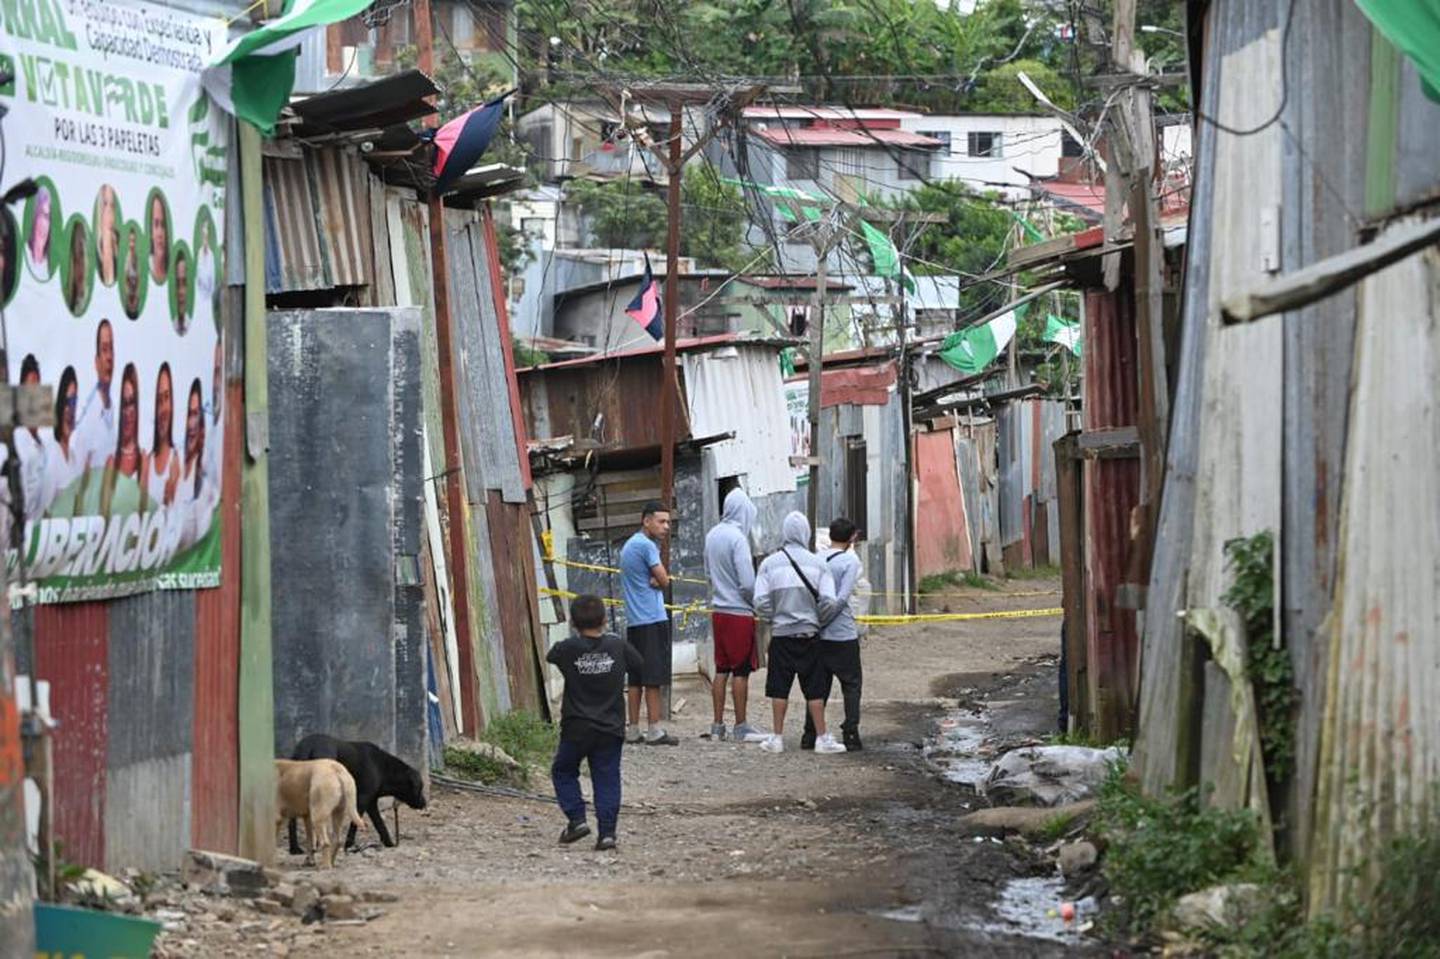 El lugar donde ocurrió el crimen múltiple queda entre los distritos de Purral e Ipís de Goicoechea. En esa barriada las casas tienen banderas y vallas de cara a las elecciones del 4 de febrero. Foto: Albert Marín.